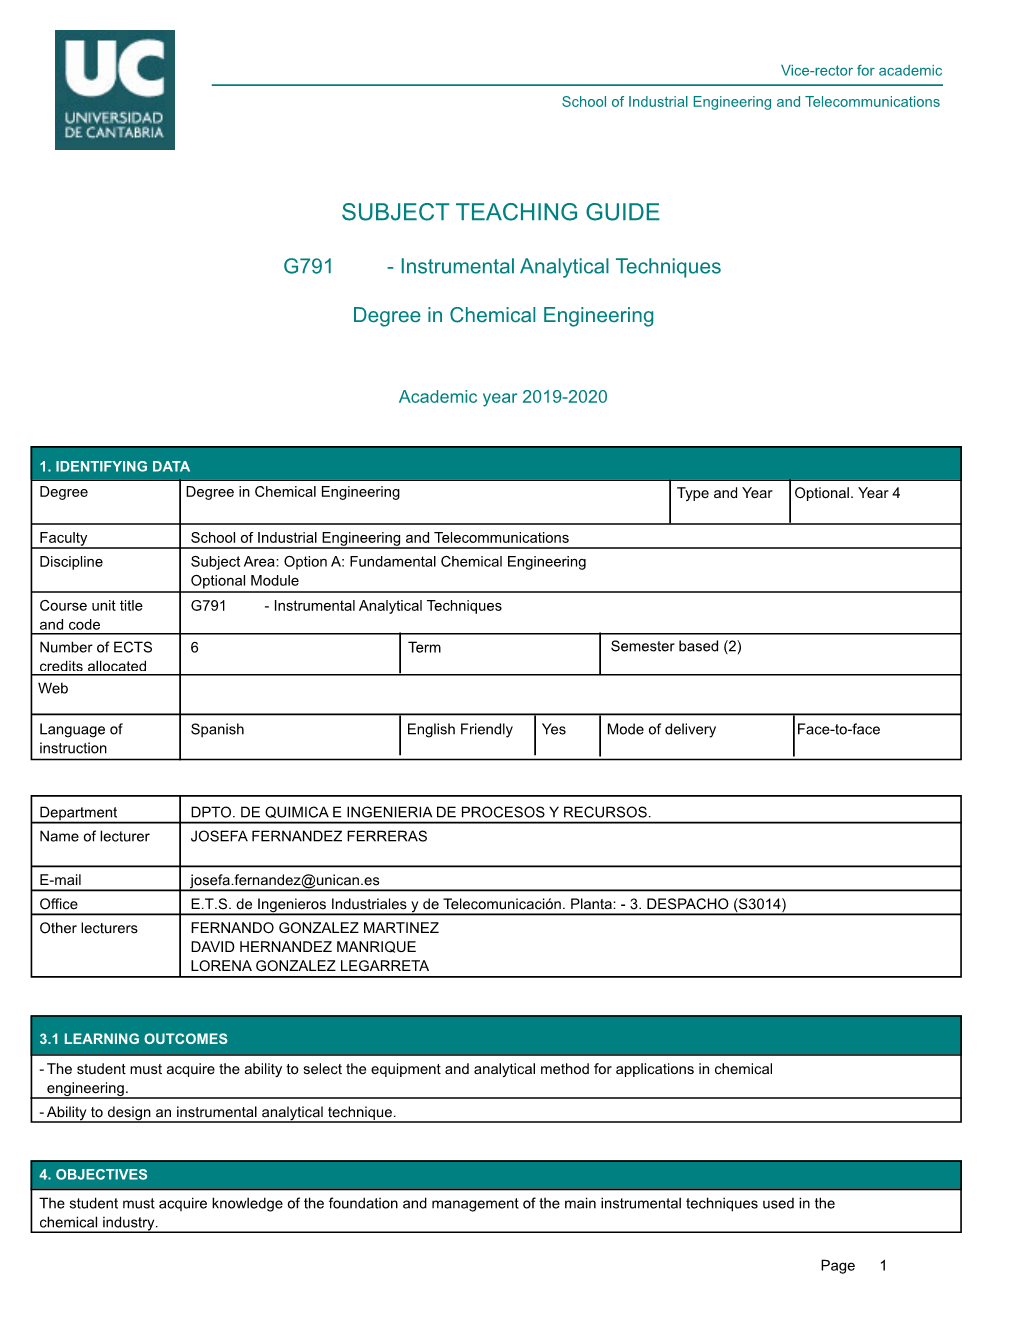 Subject Teaching Guide